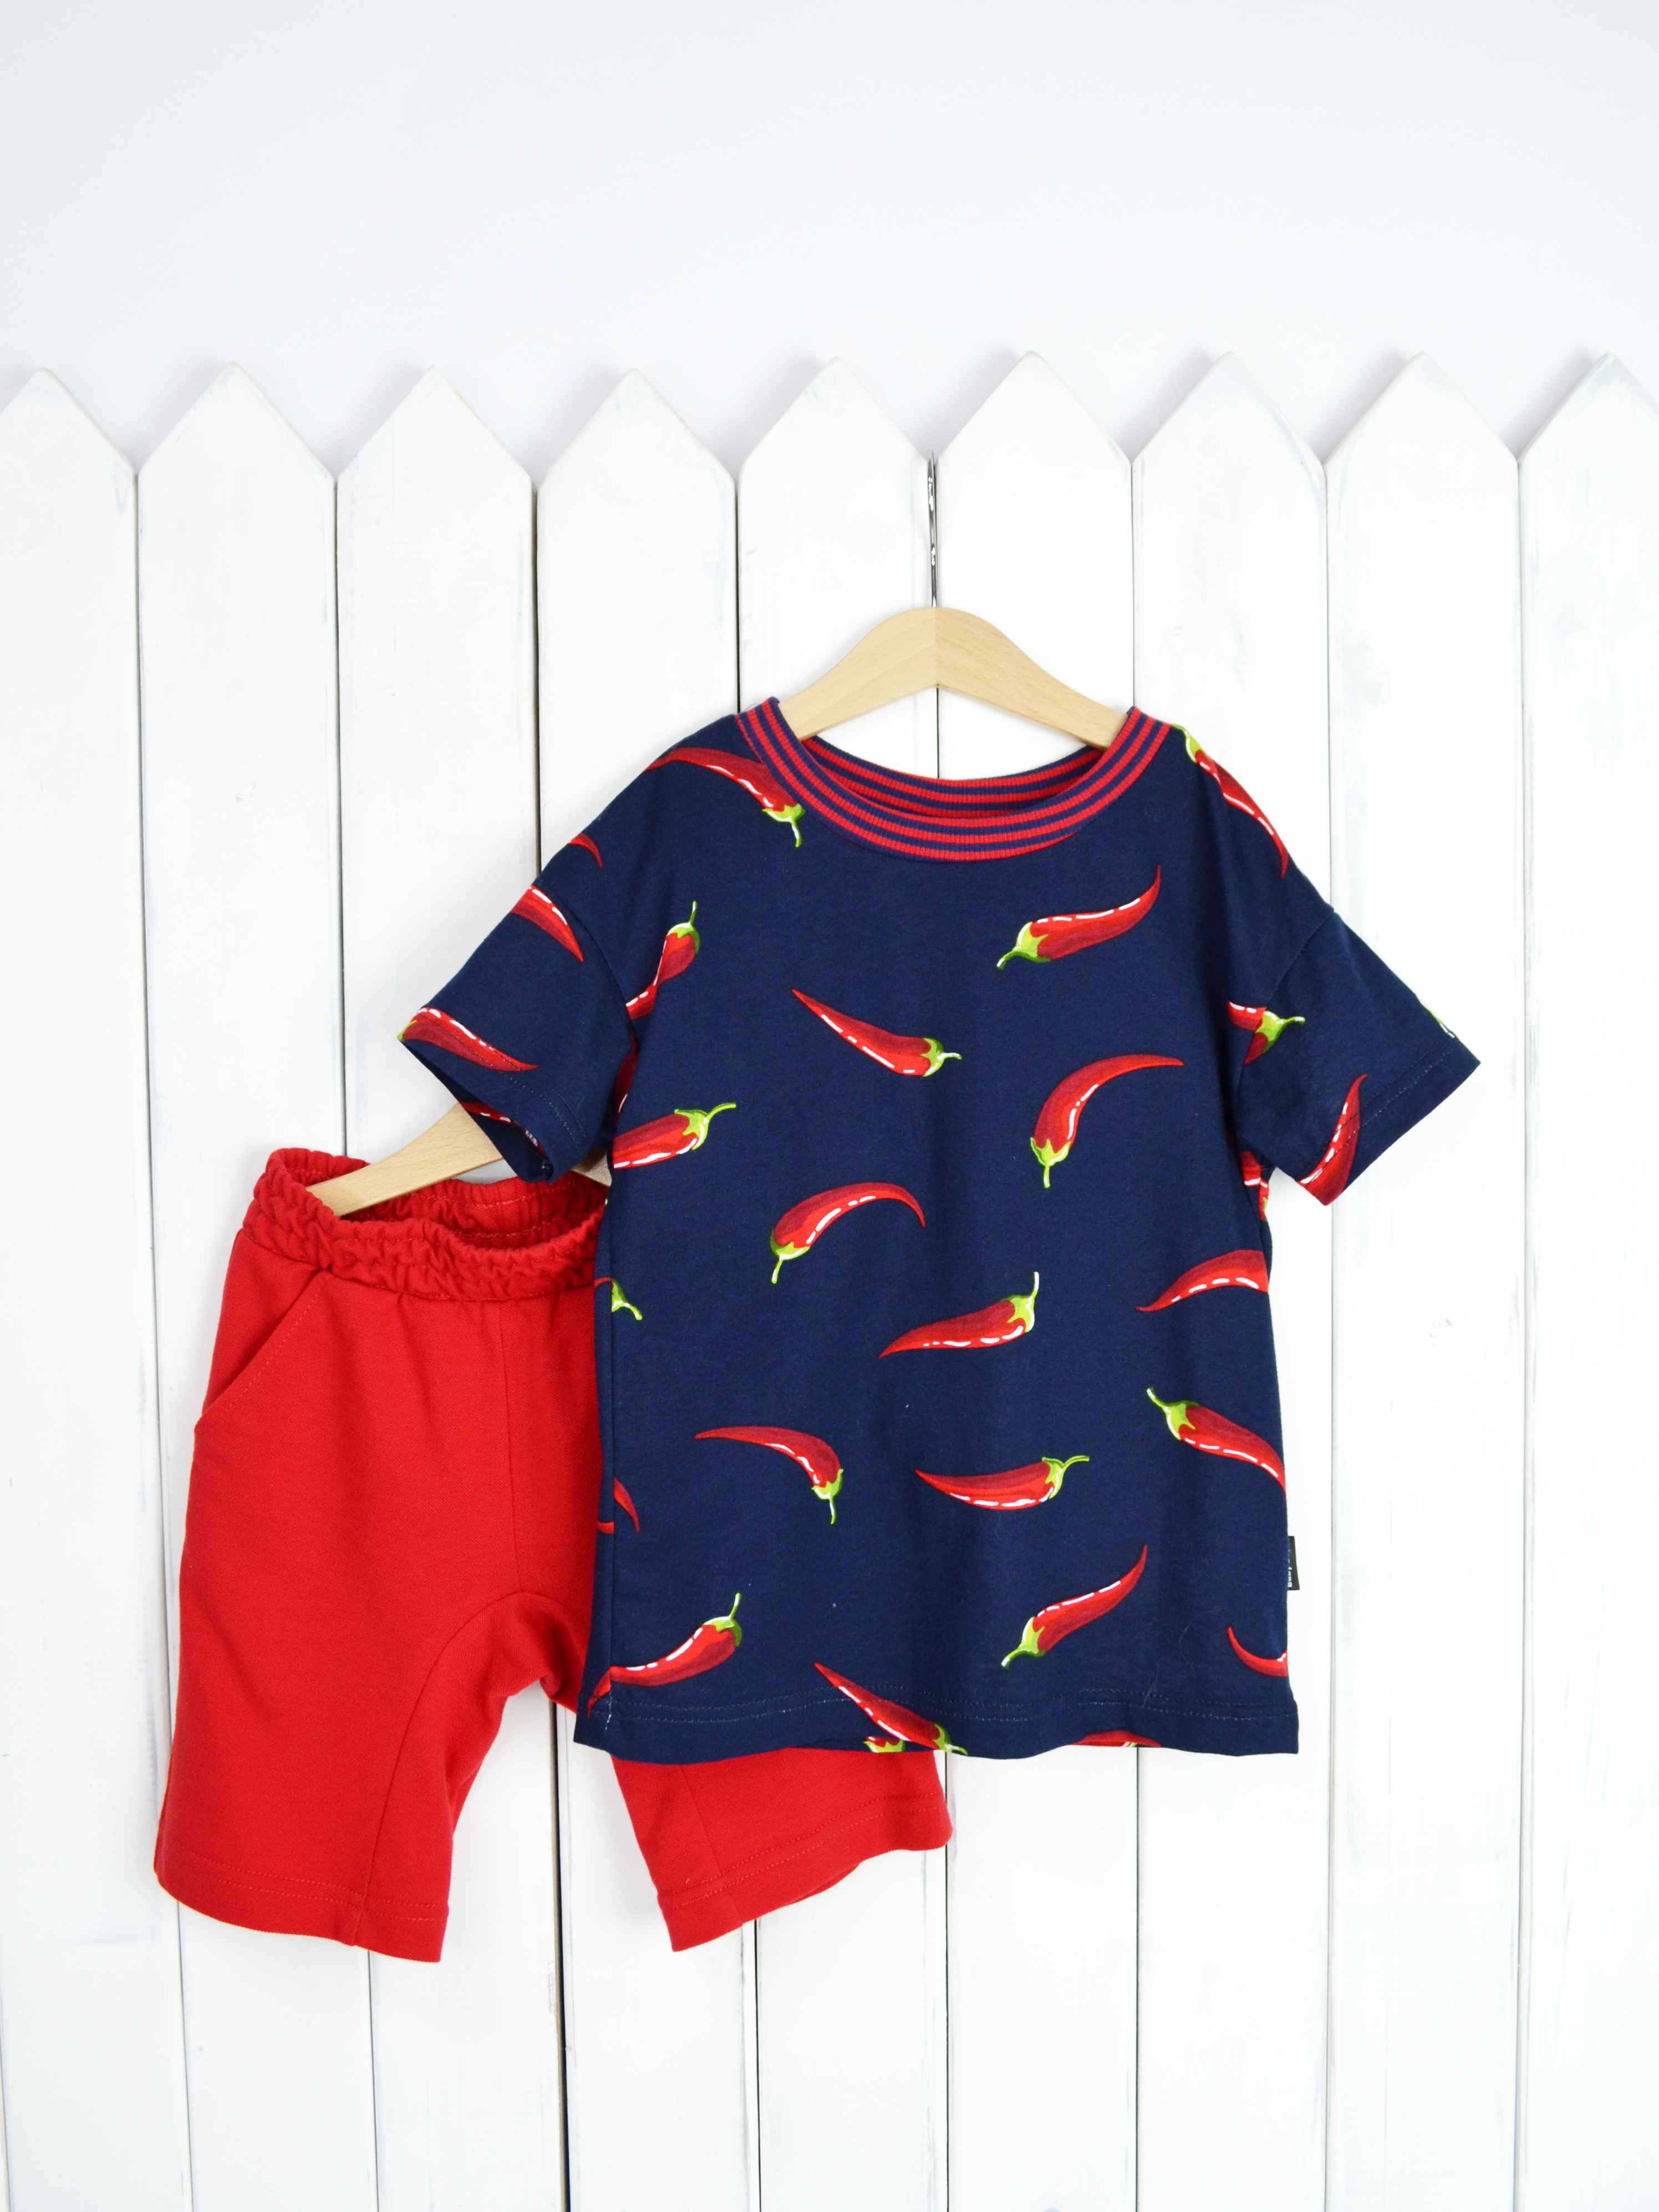 КД354/1-К Комплект детский р.104 Крутые перцы футболка+шорты/красное пике Бэби Бум - Пенза 